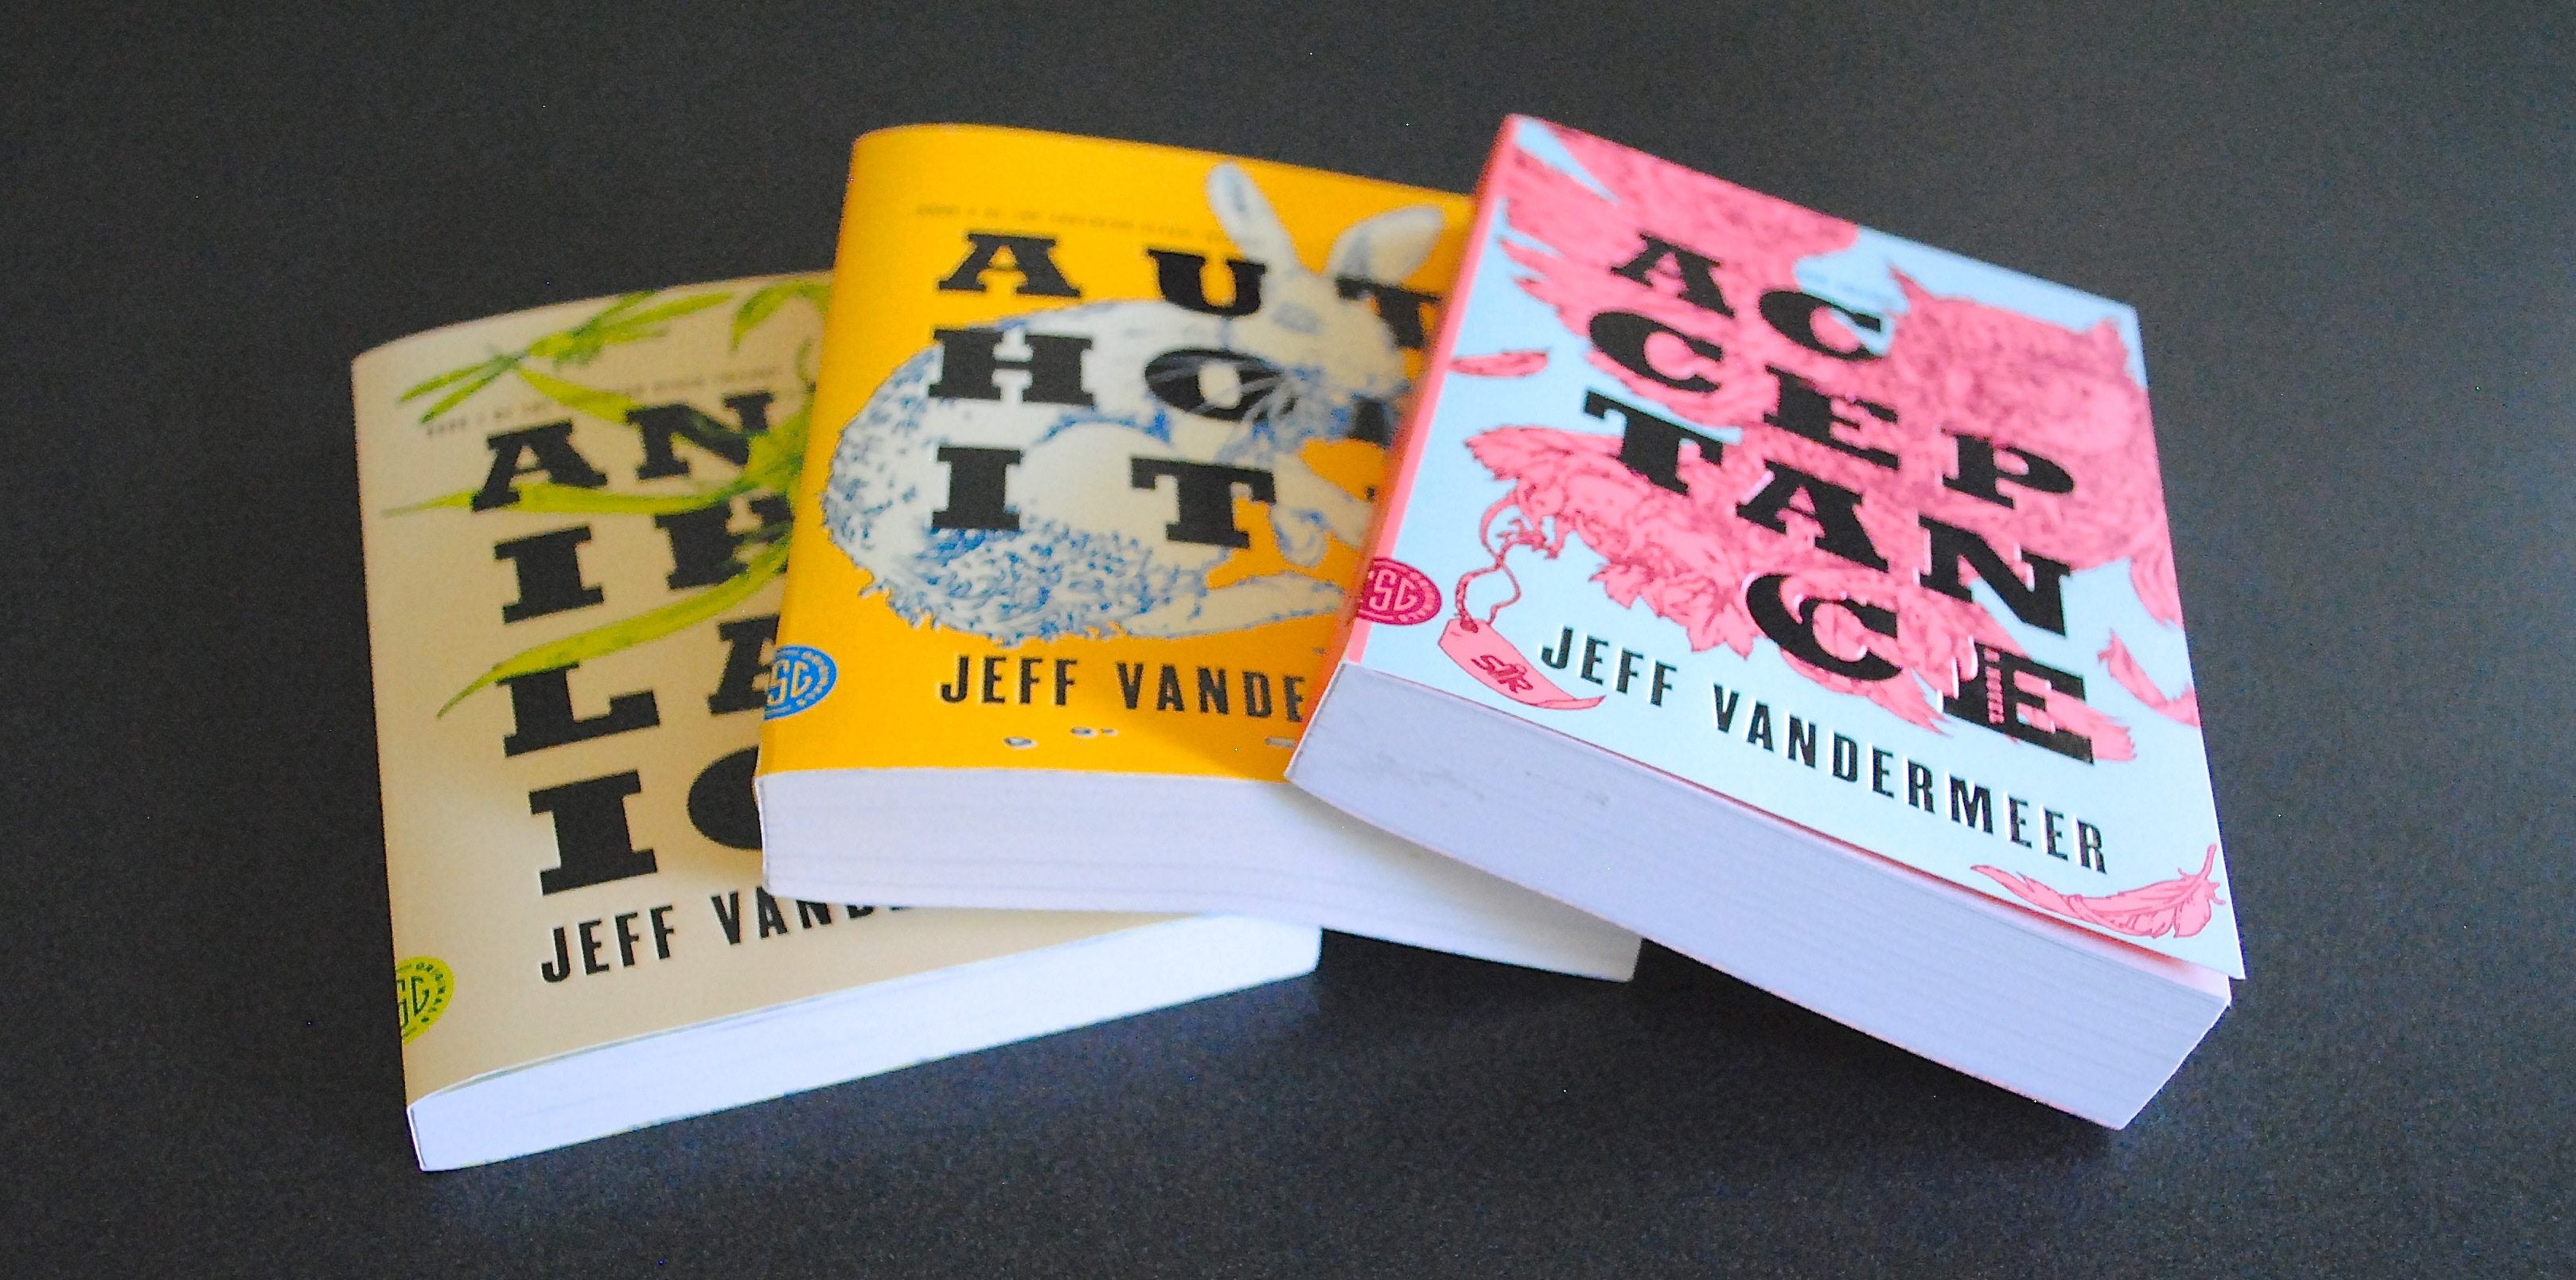 Jeff VanderMeer's Southern Reach trilogy